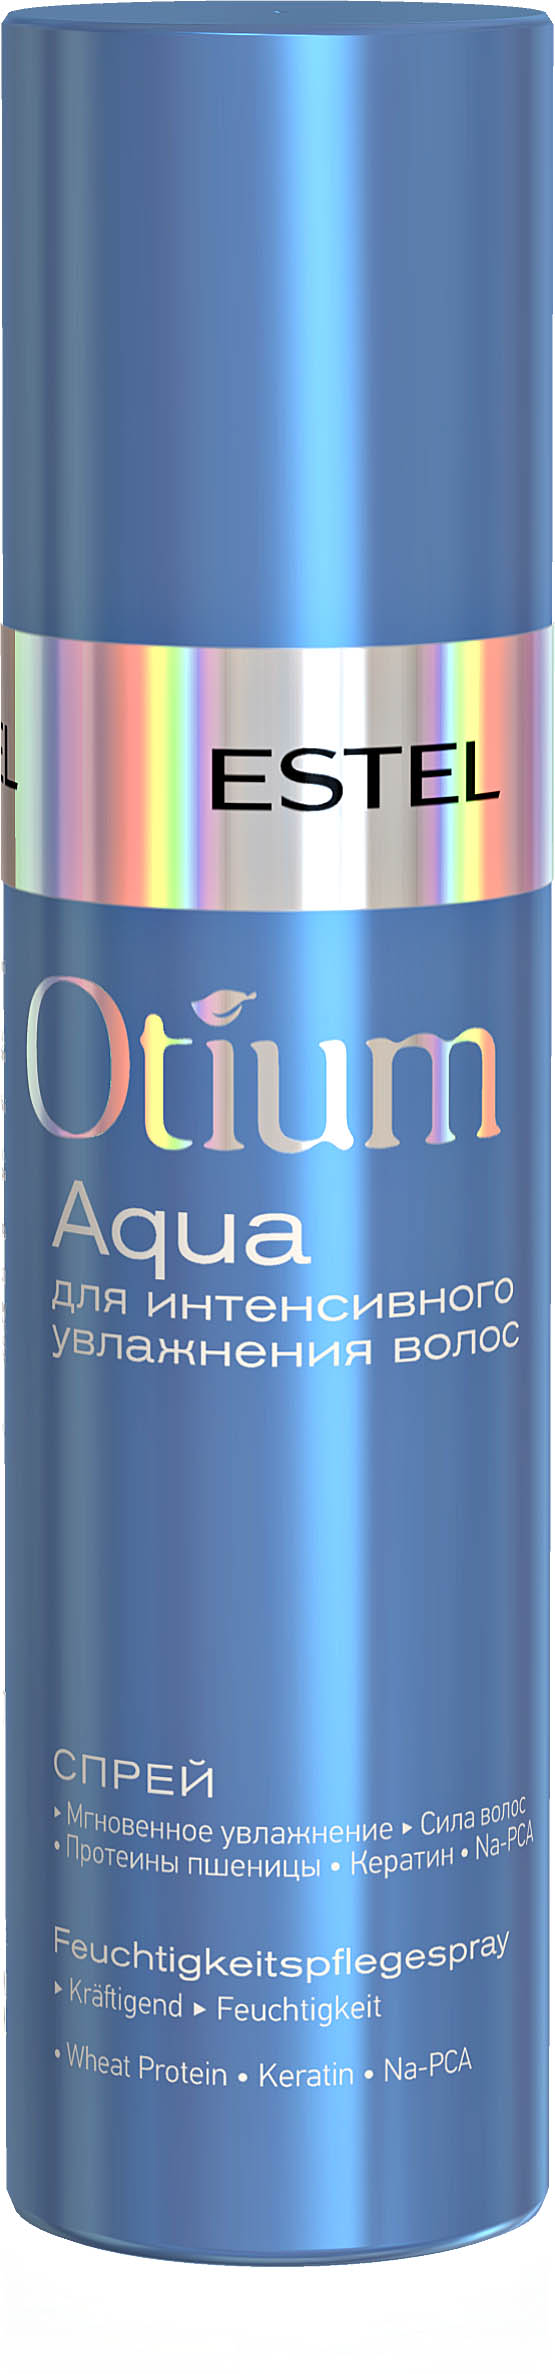 Спрей для интенсивного увлажнения волос OTIUM AQUA, 200 мл